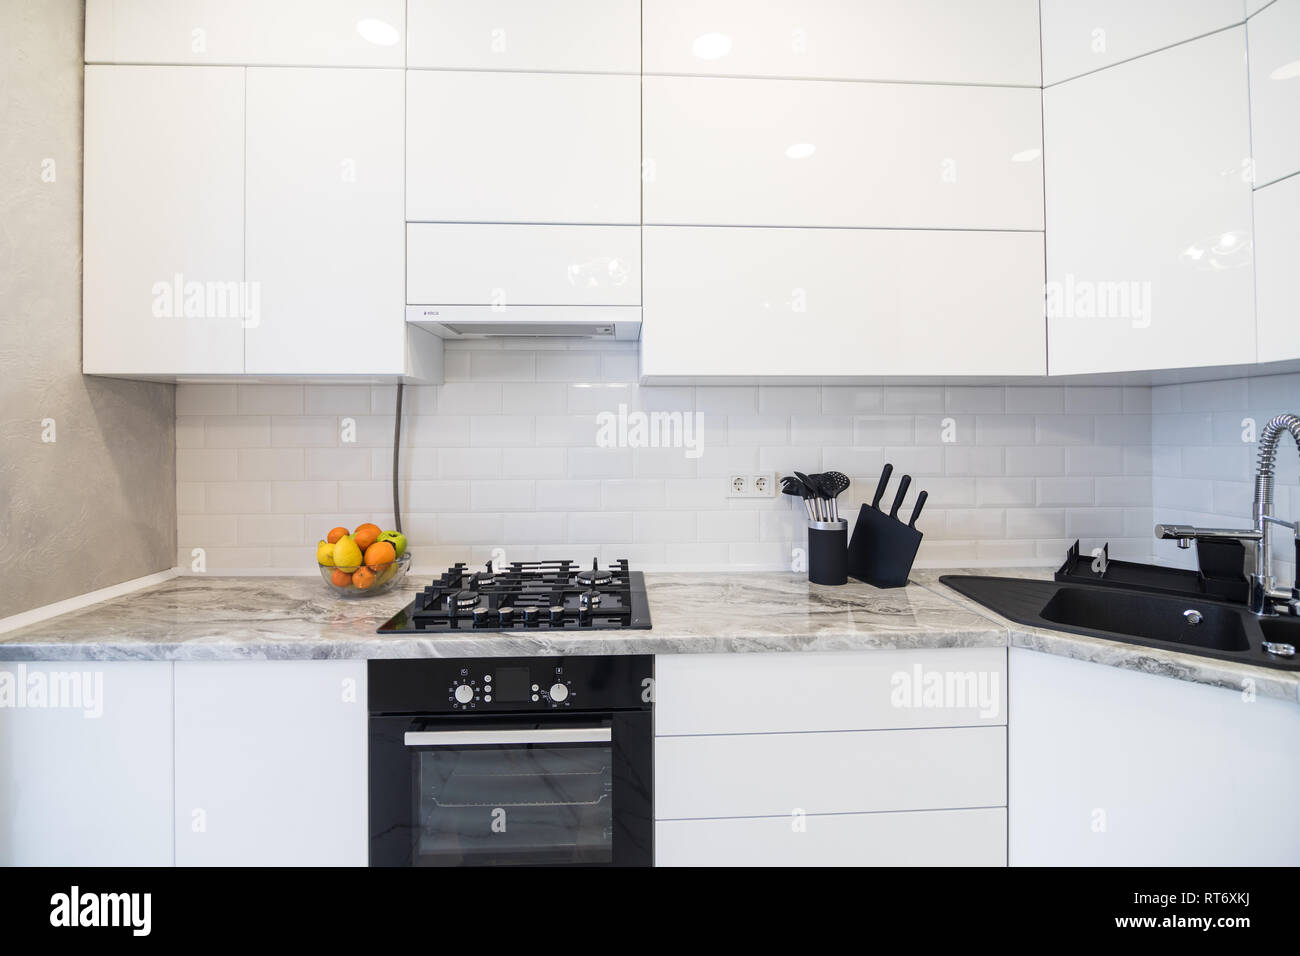 New modern kitchen interior. White monomalist kitchen disign. Stock Photo